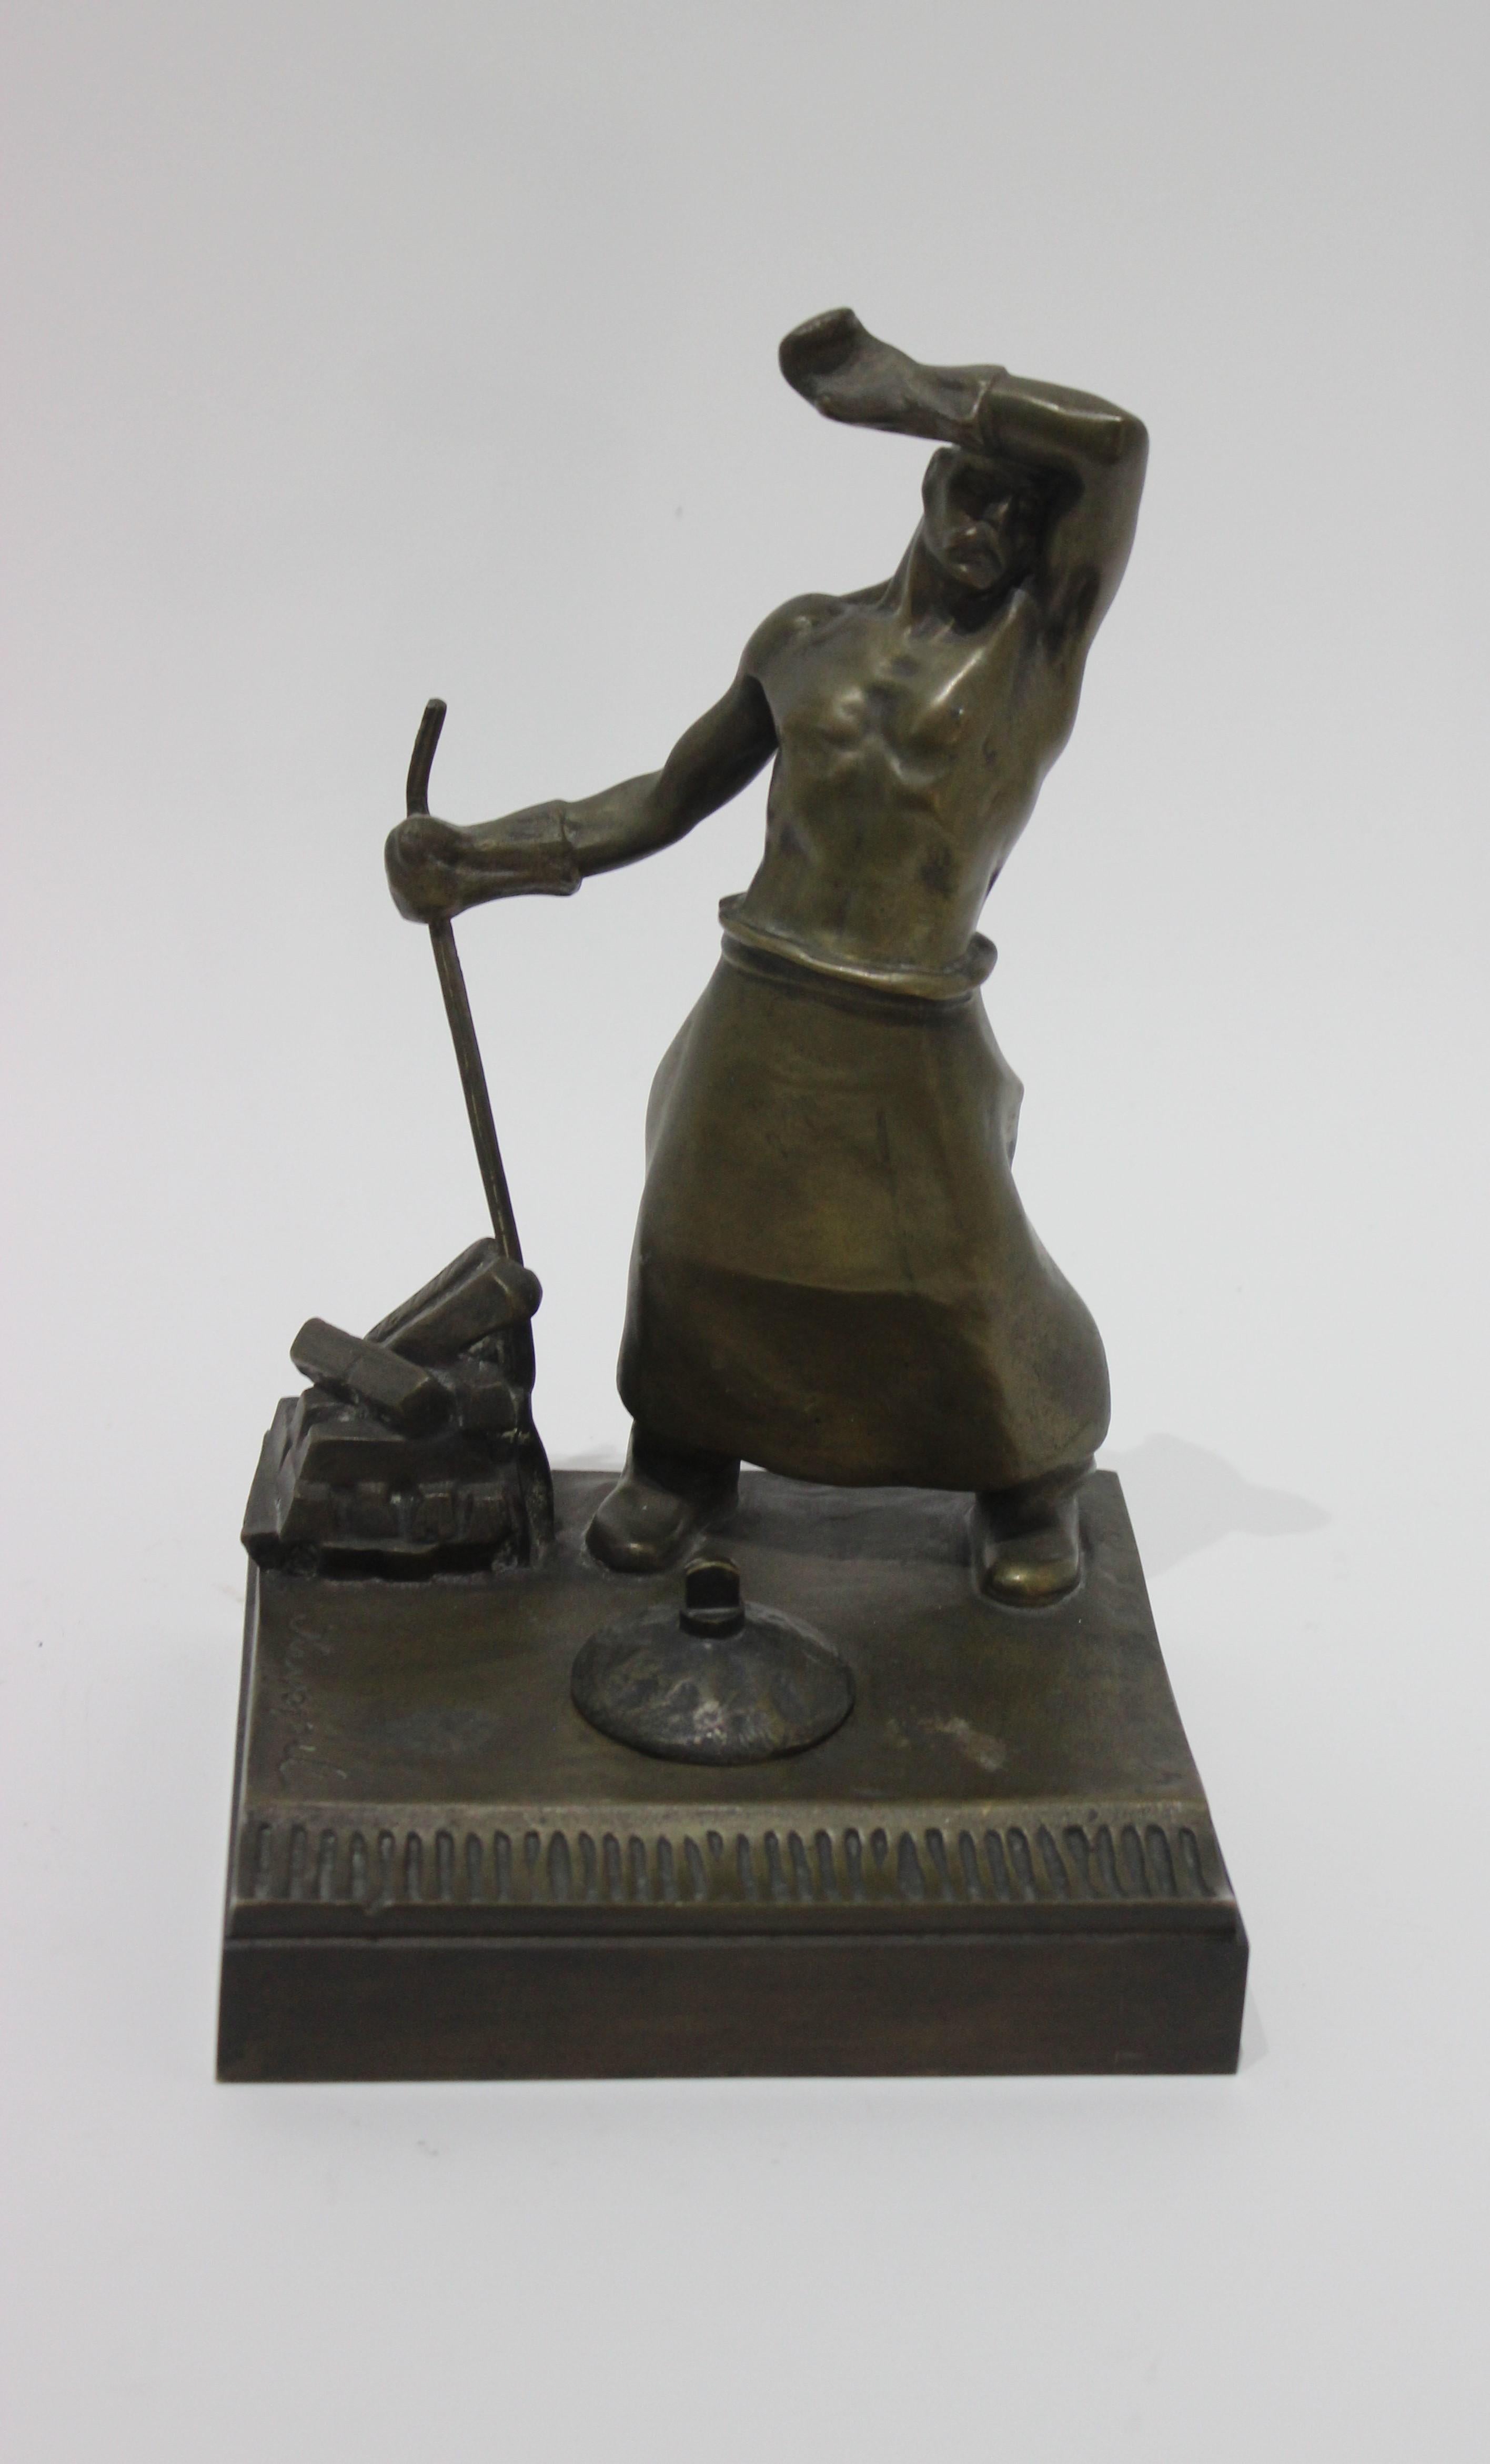 Sculpture de bureau en bronze du 20e siècle signée par Heinrich Krippel, 1883-1945.

Note - Le réservoir d'encre est manquant...